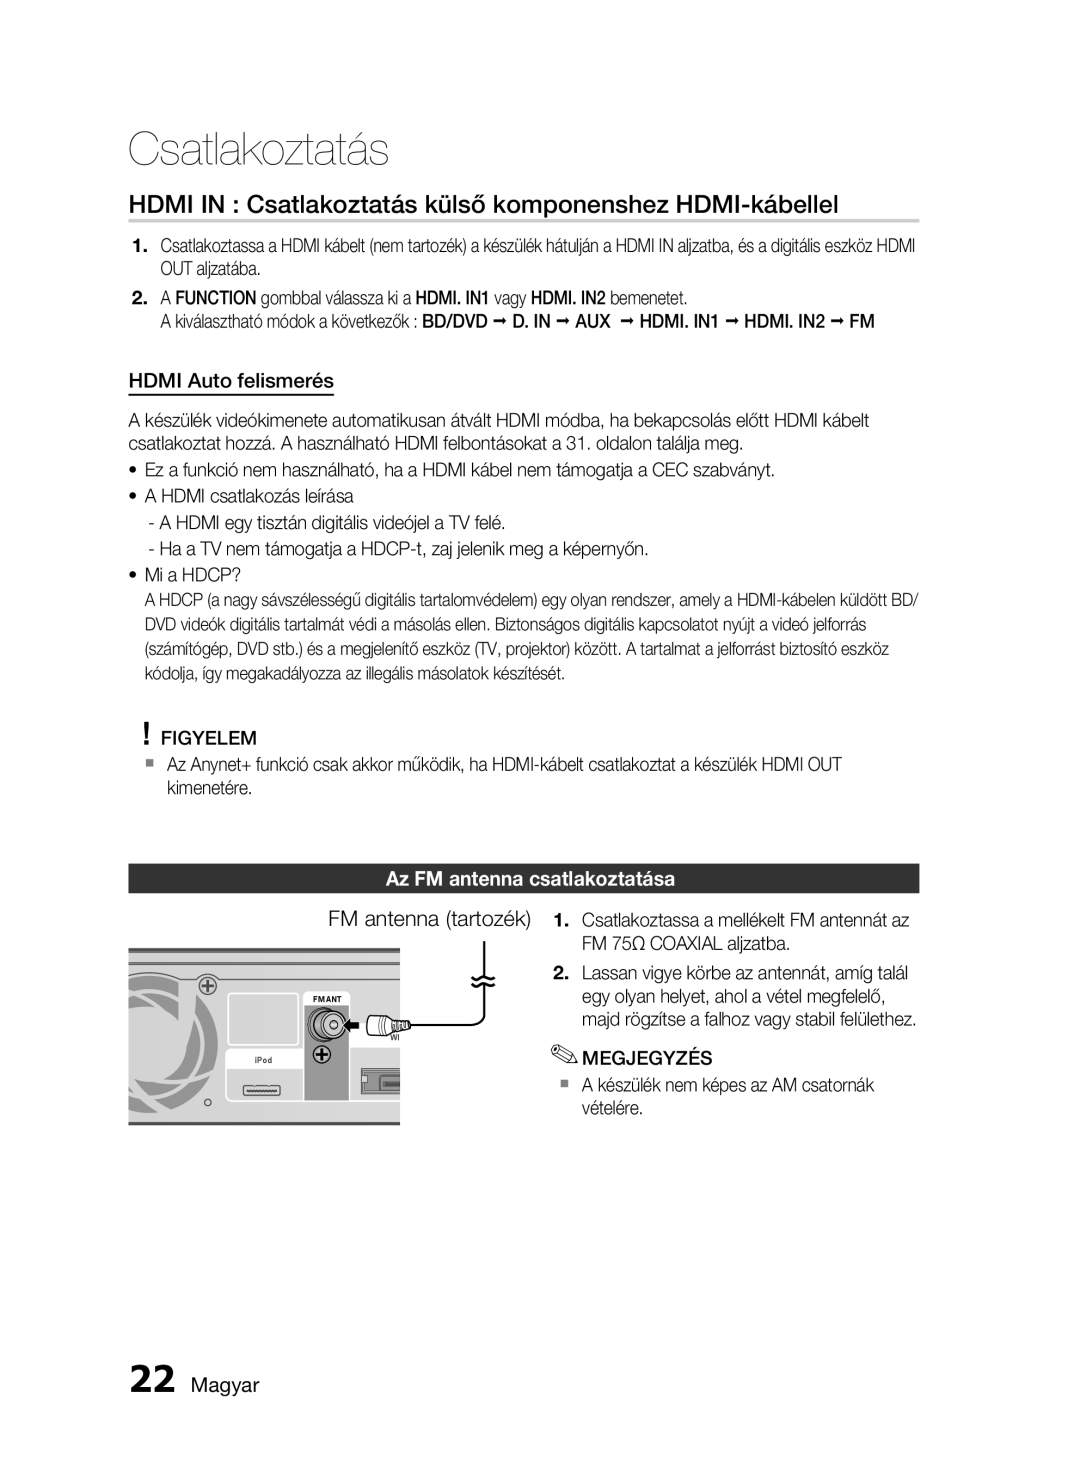 Samsung HT-C5900/XEF HDMI IN Csatlakoztatás külső komponenshez HDMI-kábellel, FM antenna tartozék, HDMI Auto felismerés 